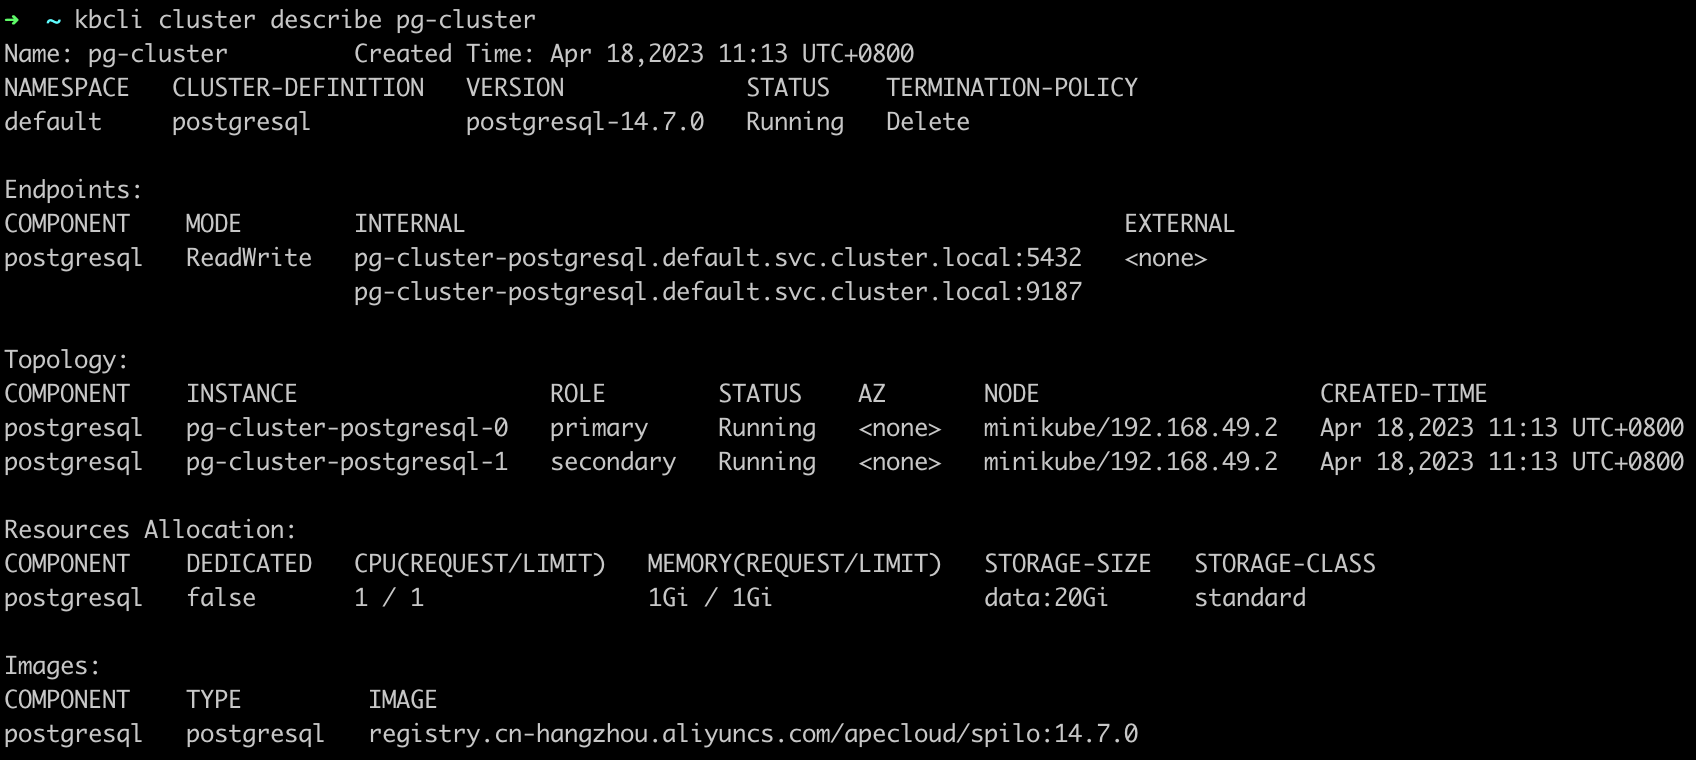 PostgreSQL cluster original status